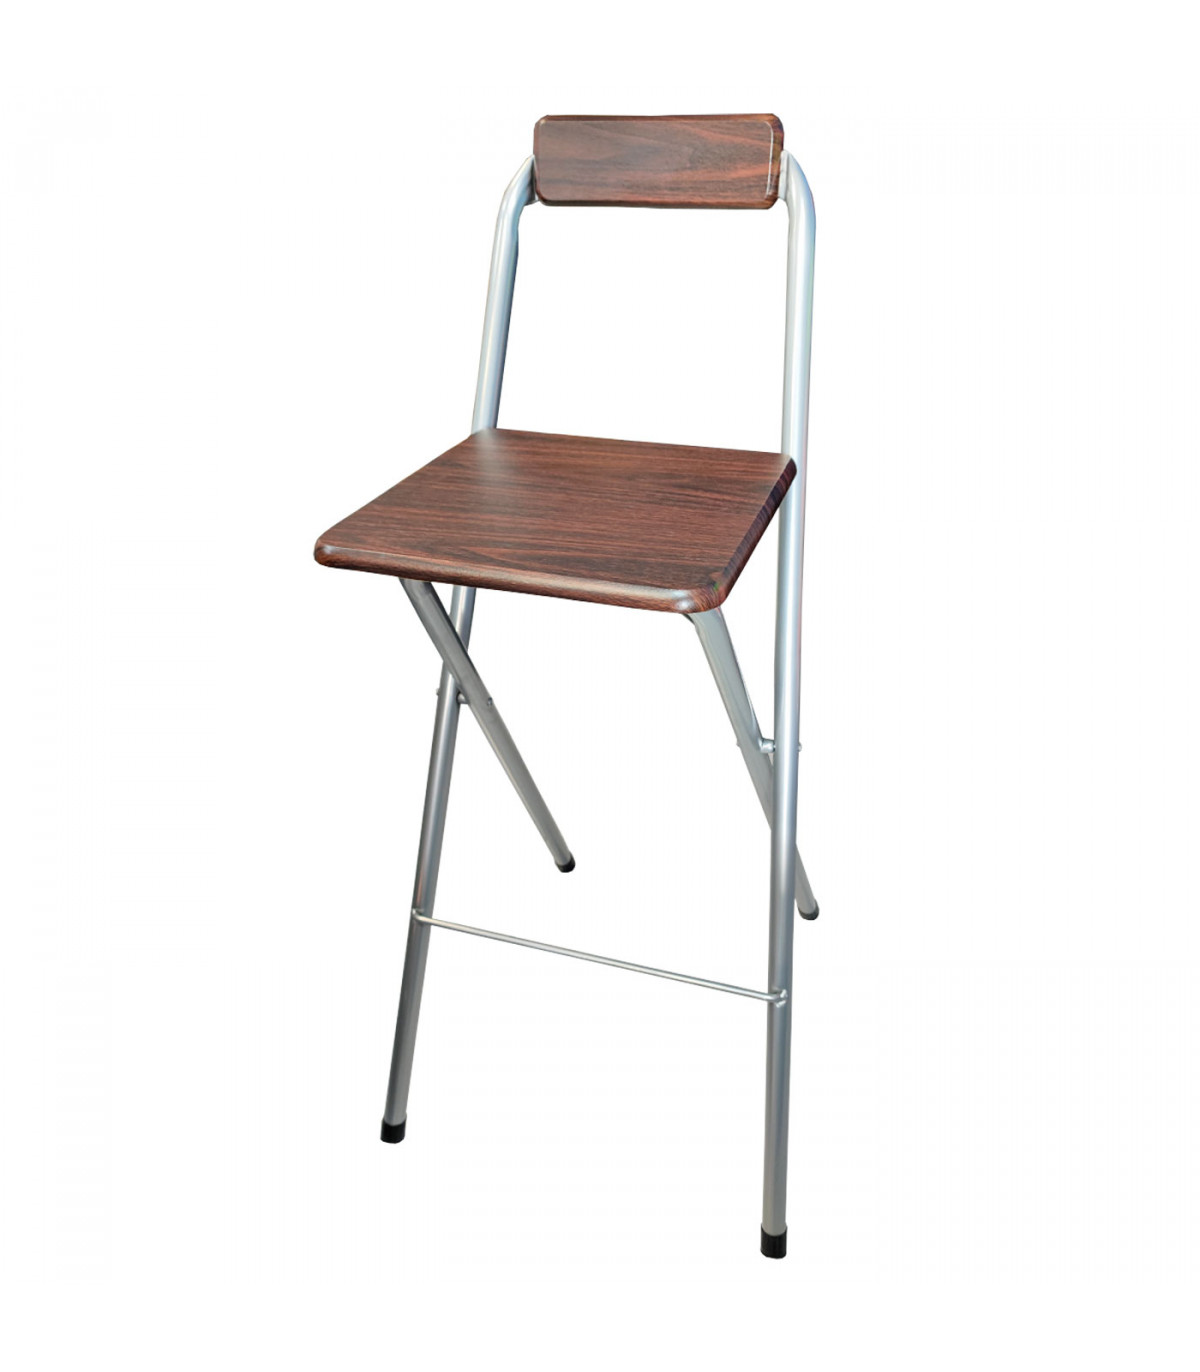 Taburete de bar plegable, silla de bar, taburete de madera para mostrador,  silla alta plegable, adecuado para bar, restaurante, cocina (color